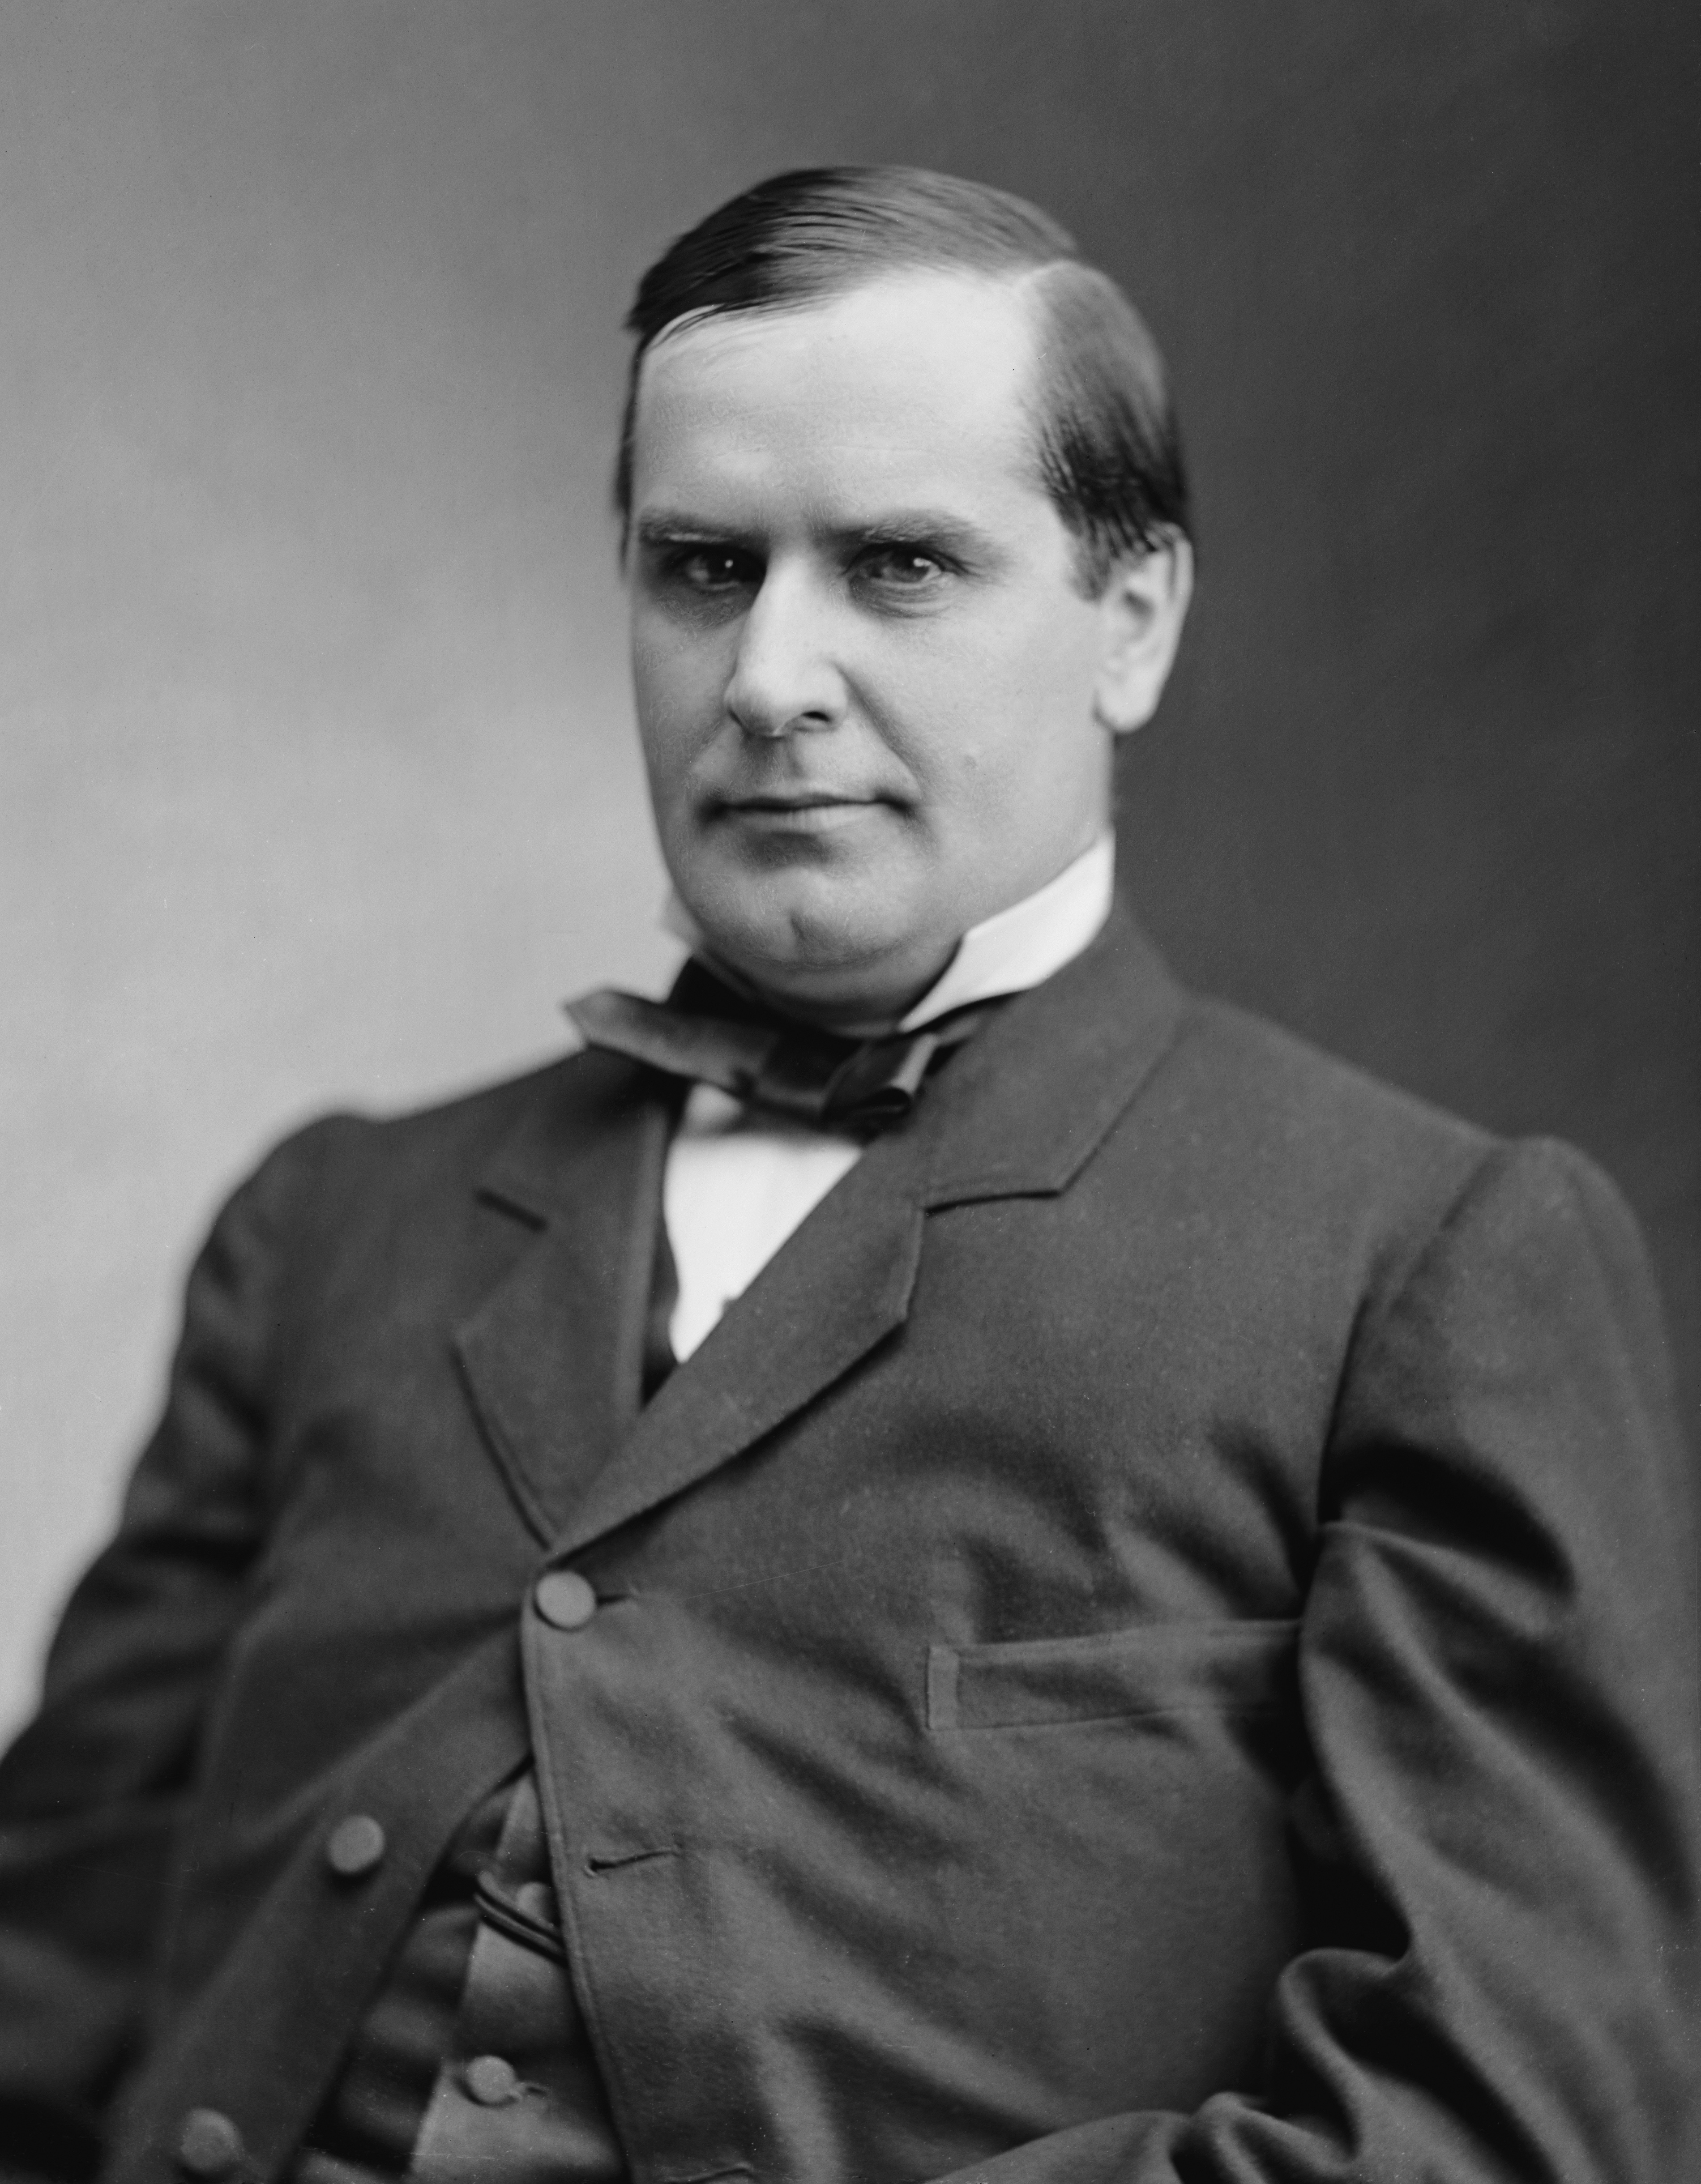 J. Edward McKinley